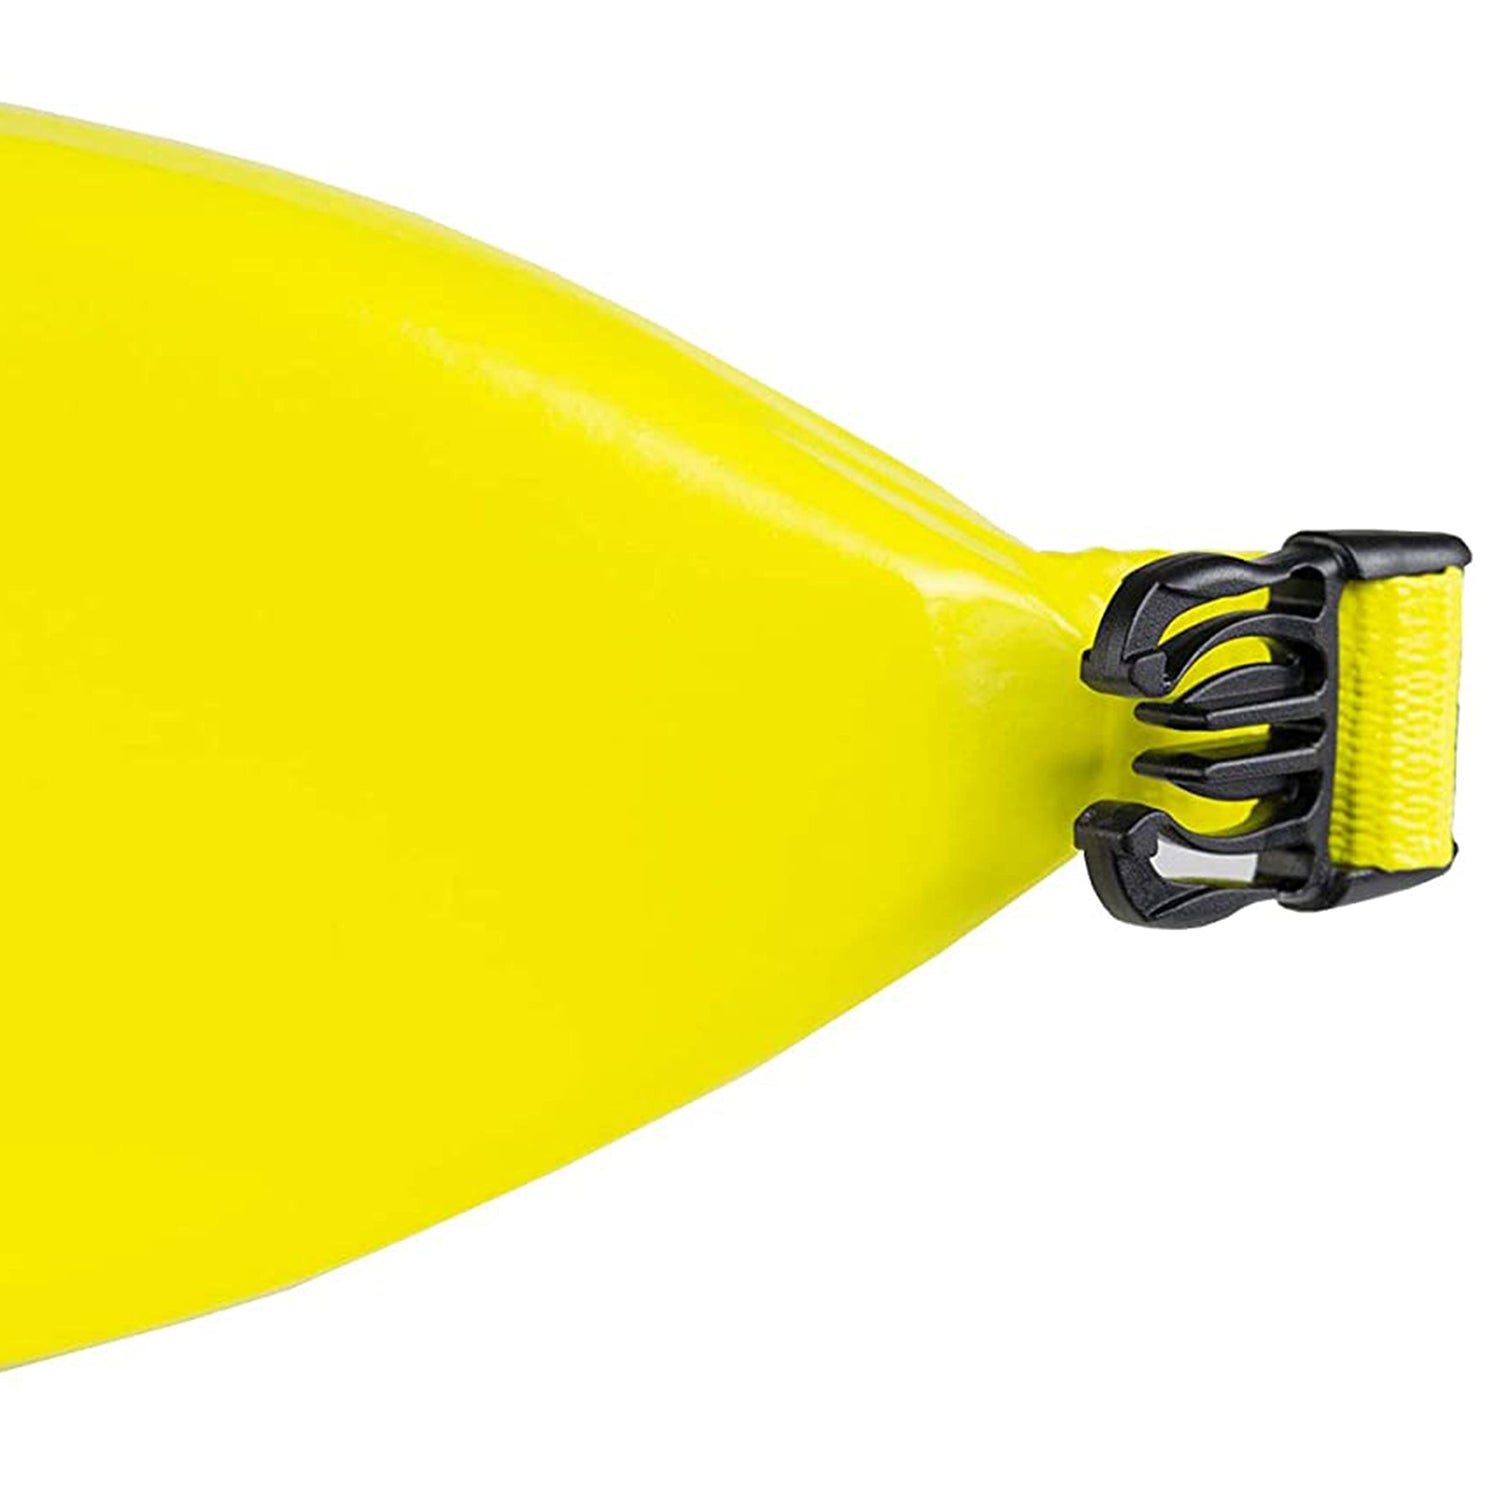 Promotional Ski Belt Yellow Large – Poolzilla